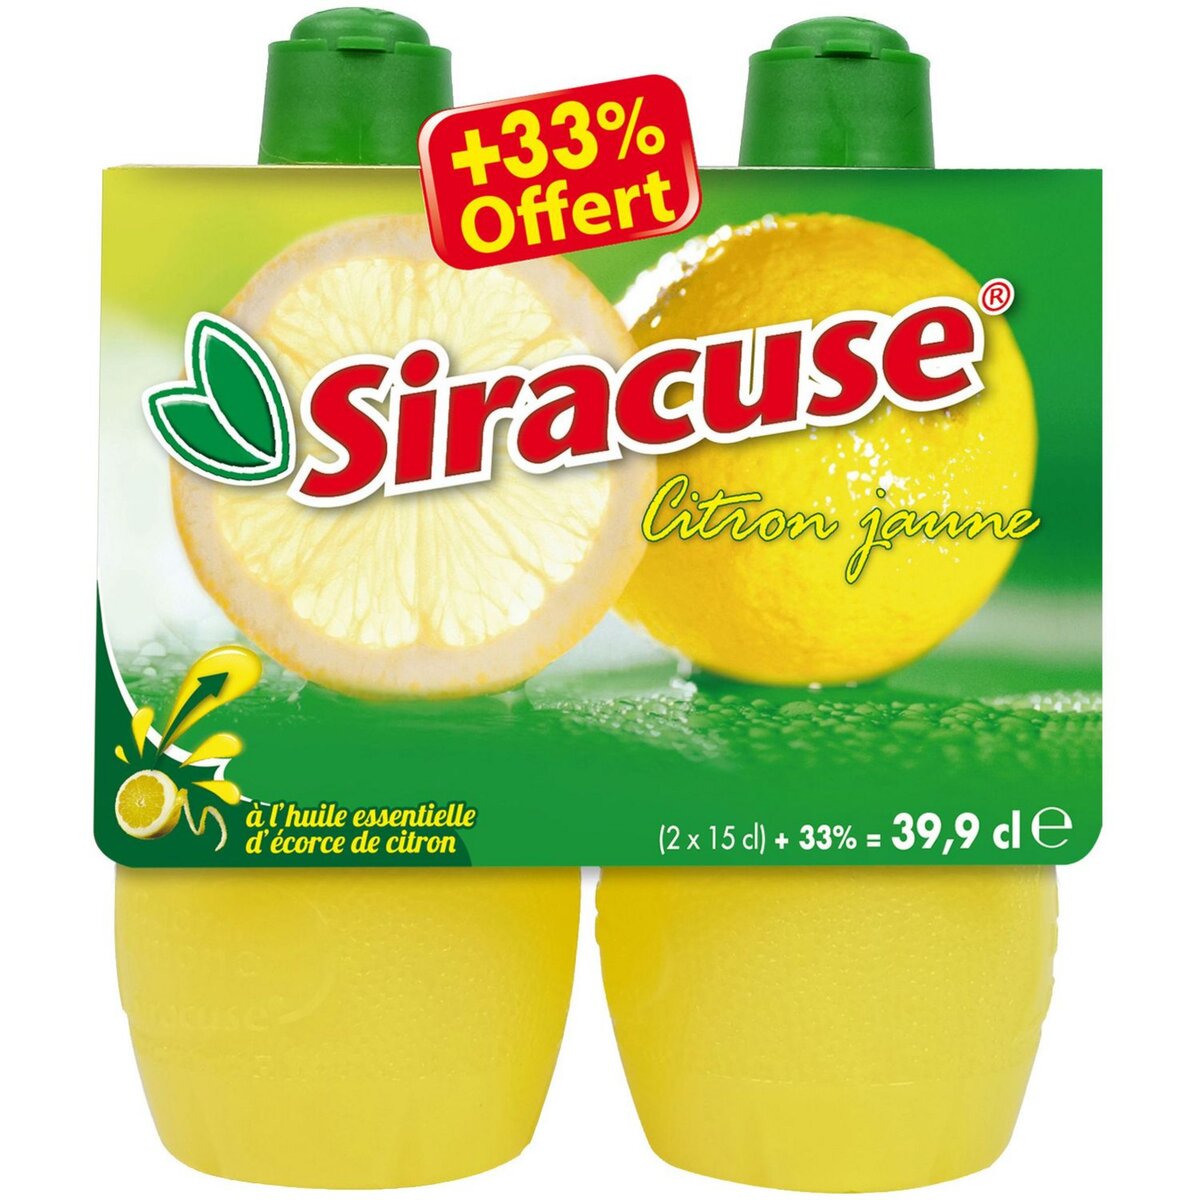 SIRACUSE Jus de citron jaune 2x15cl + 33% offert